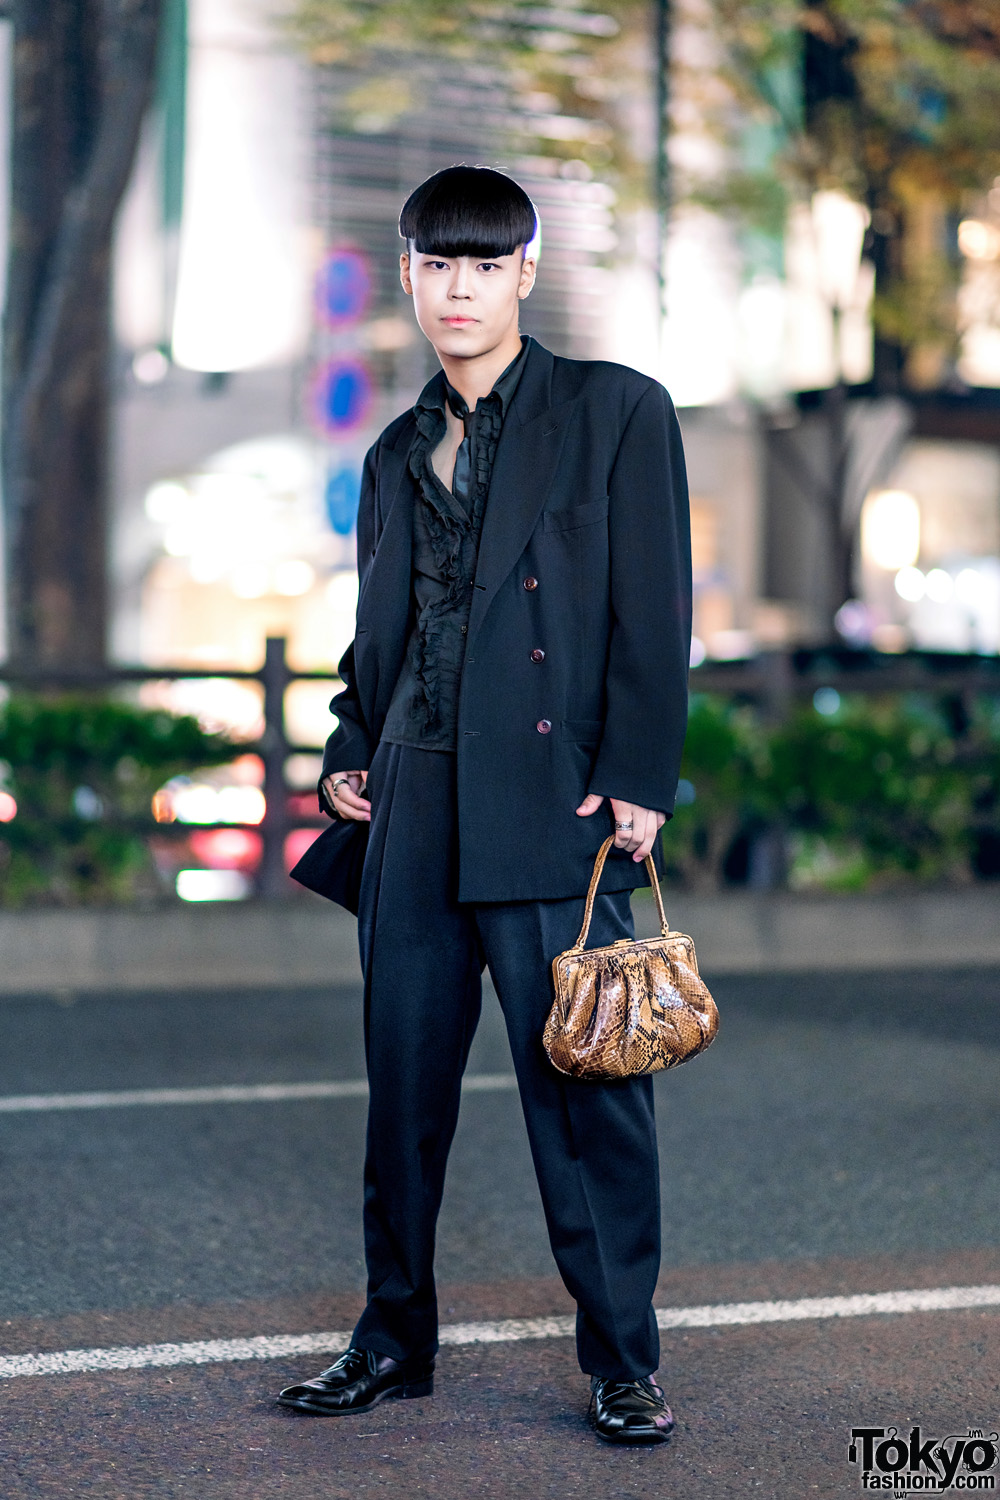 All Black Harajuku Menswear Style w/ Jean Paul Gaultier Suit Jacket, Ruffle Shirt, Silk Tie & Snakeskin Purse